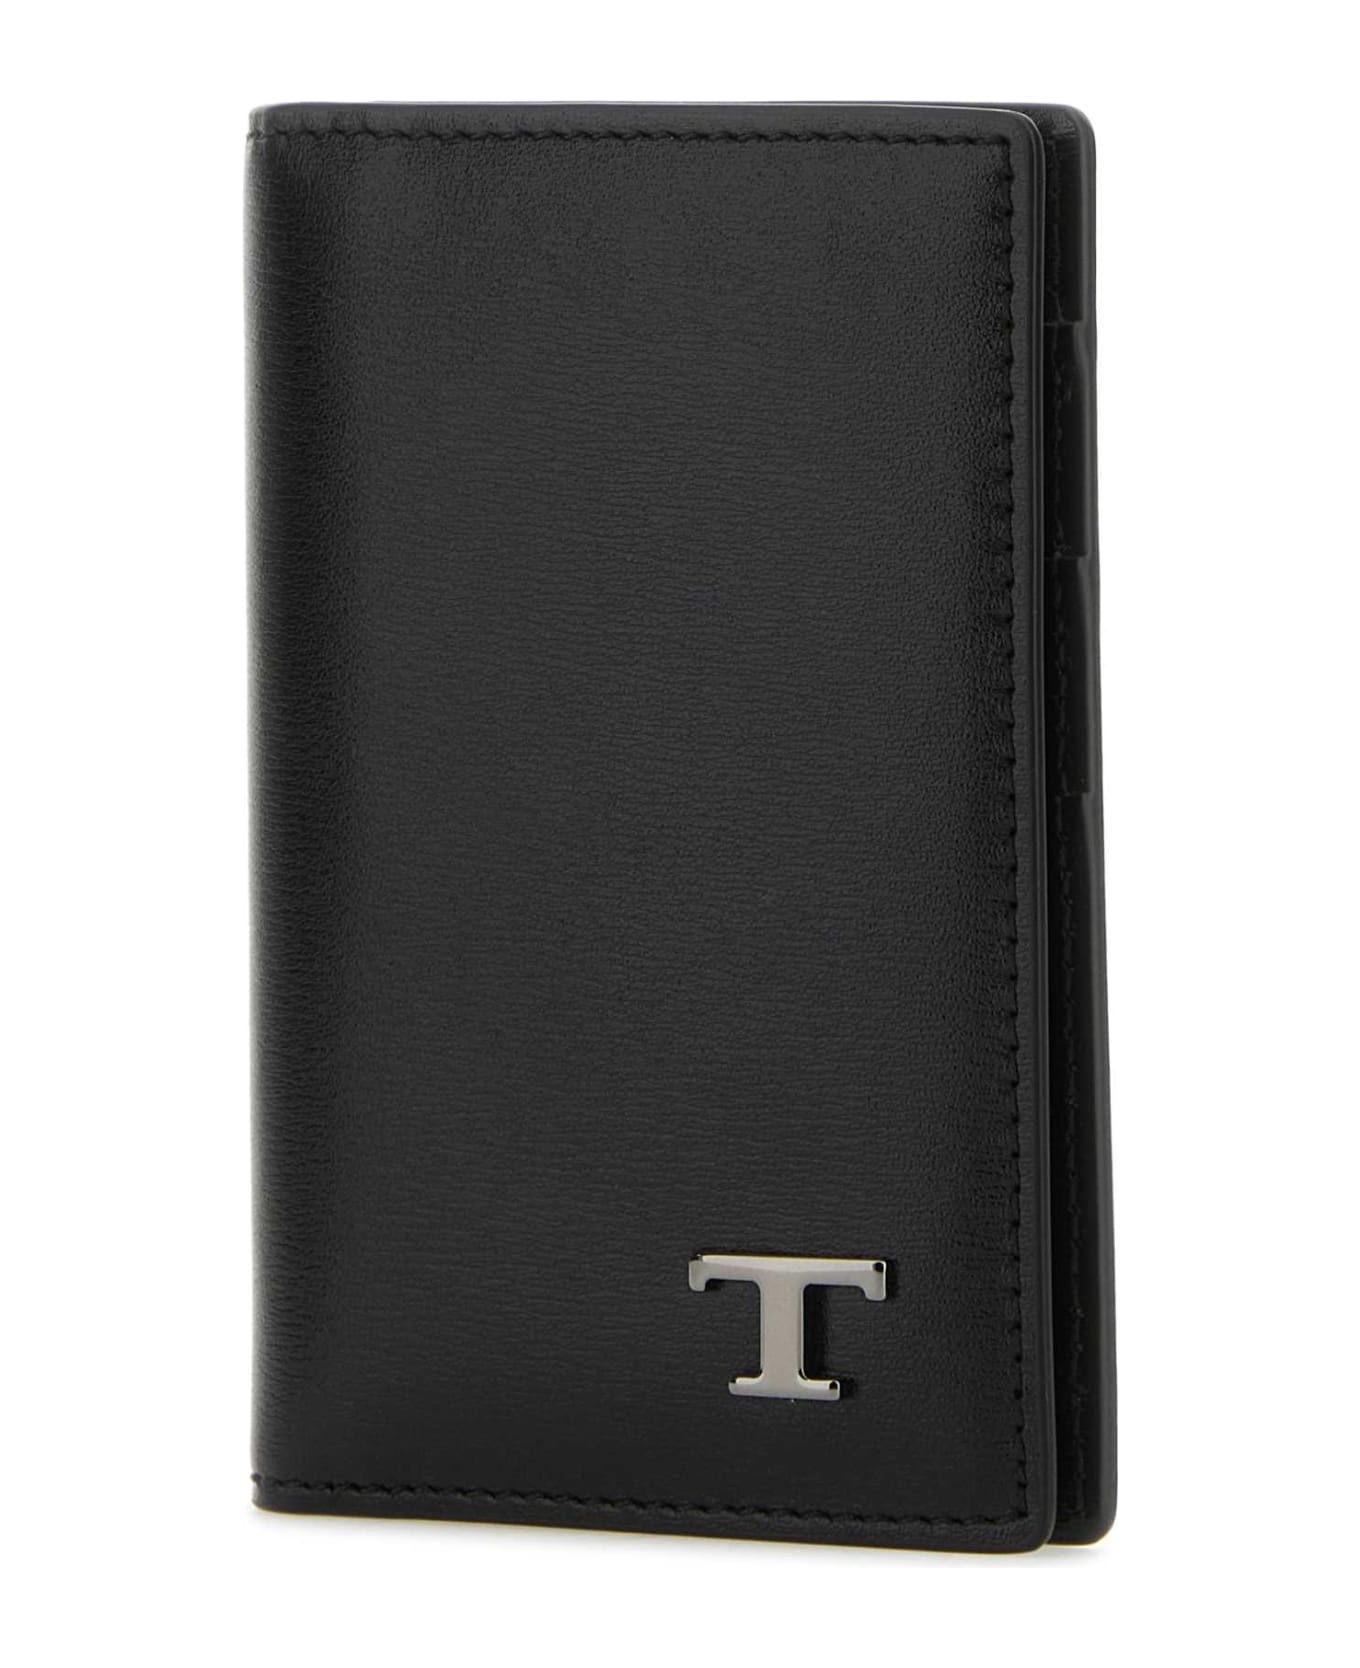 Black Leather Card Holder - 2